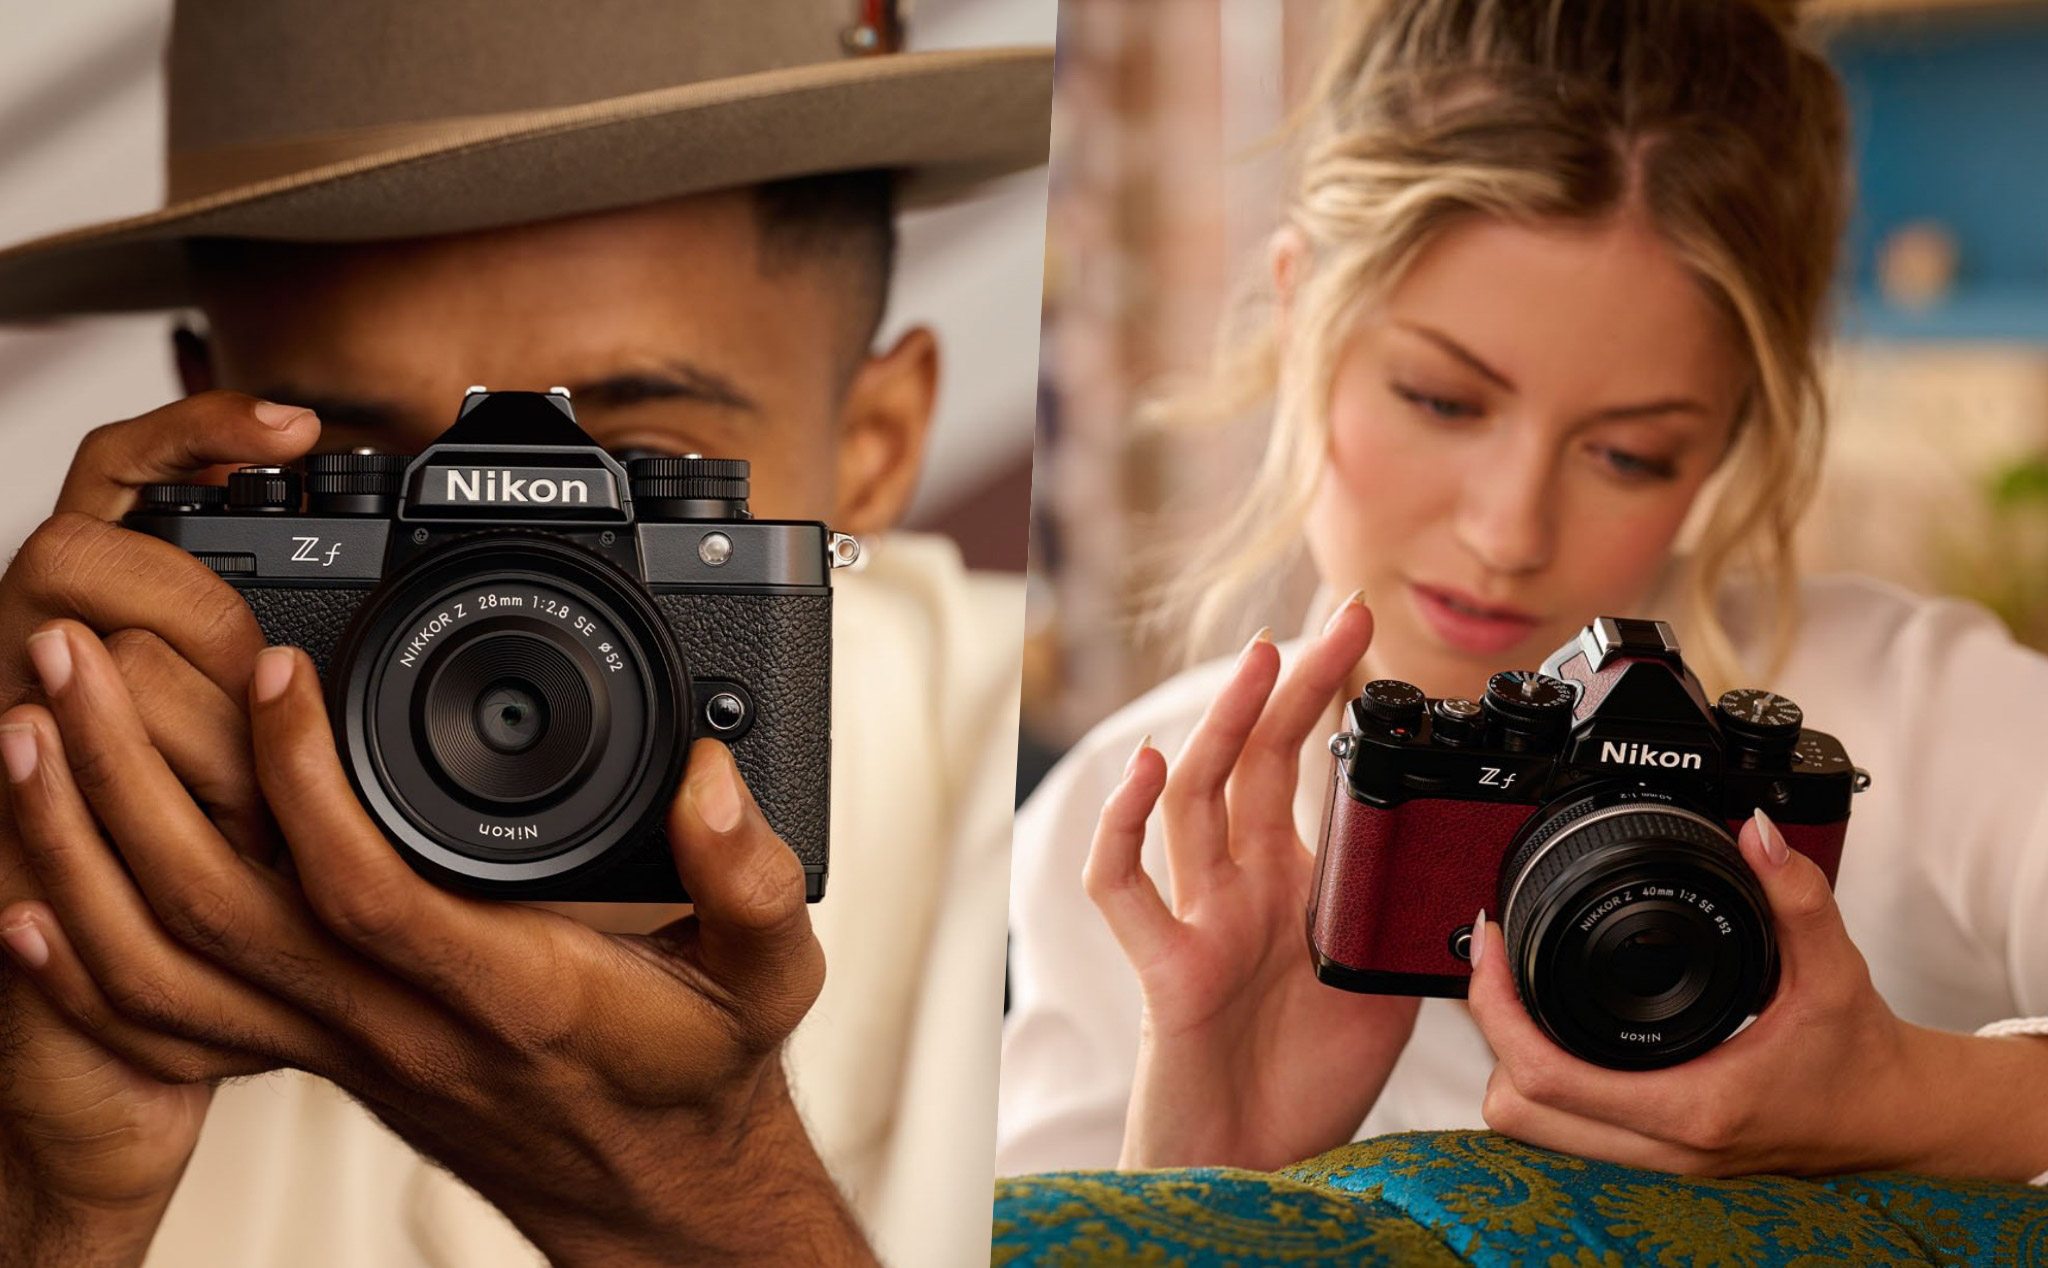 Nikon Zf ra mắt: Đẹp cổ điển, 7 màu, cảm biến Full-frame 24.5MP, lấy nét như Z8, chế độ đen trắng